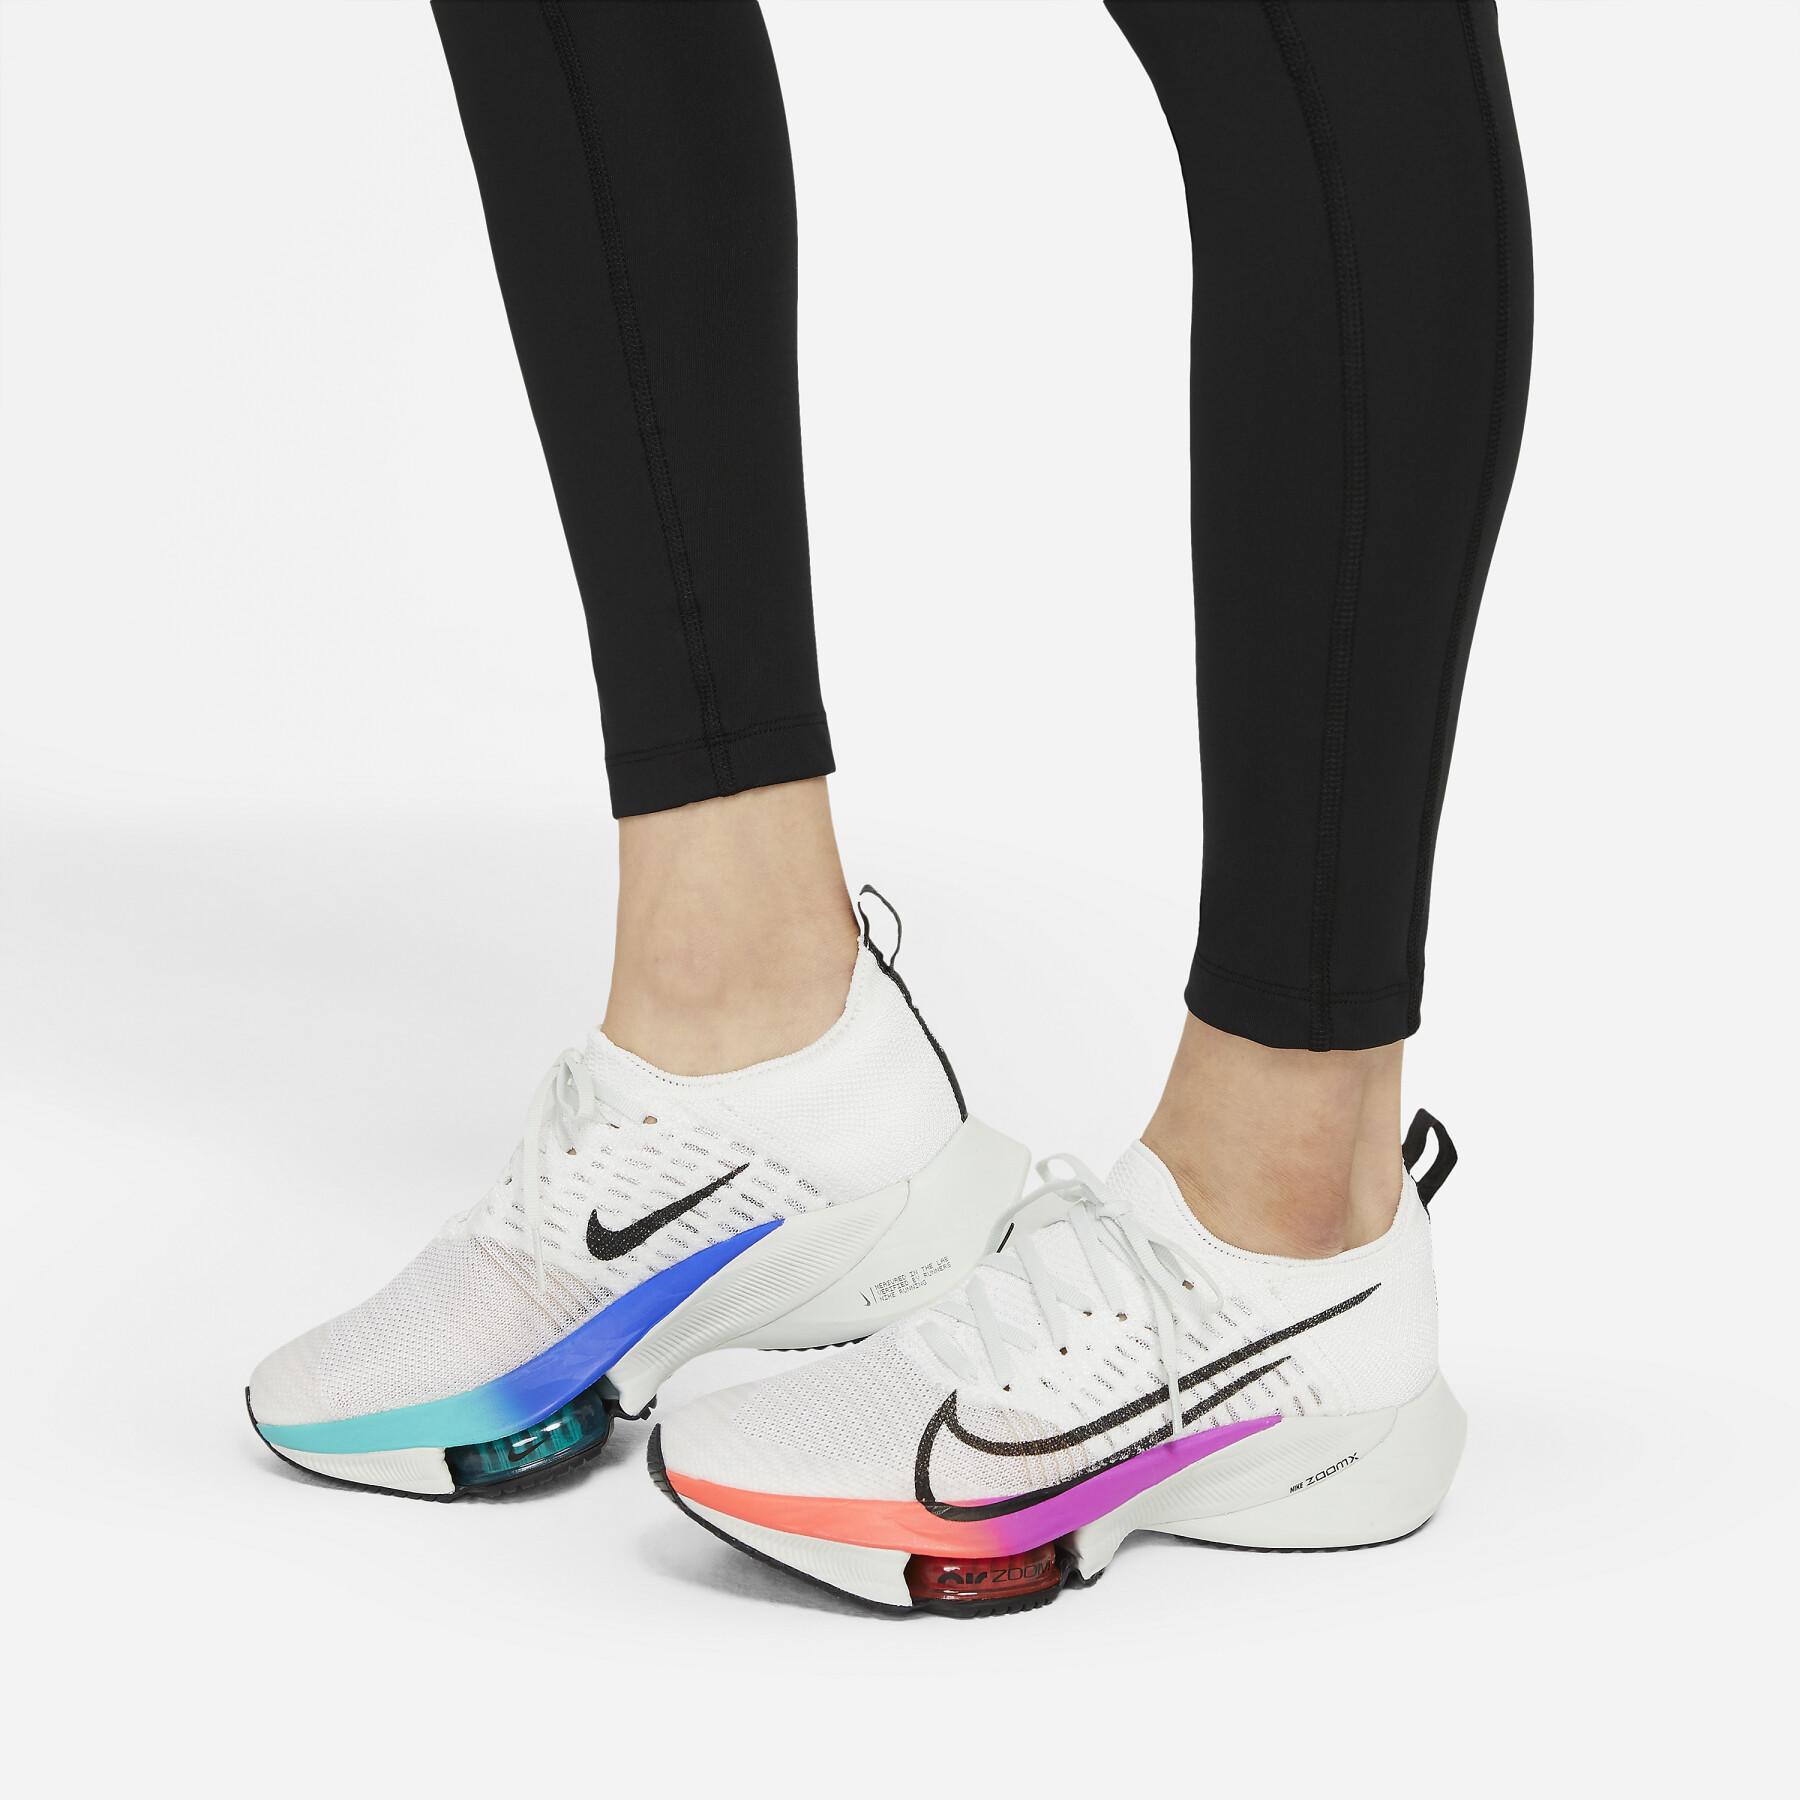 Pantalones de mujer Nike Epic Fast